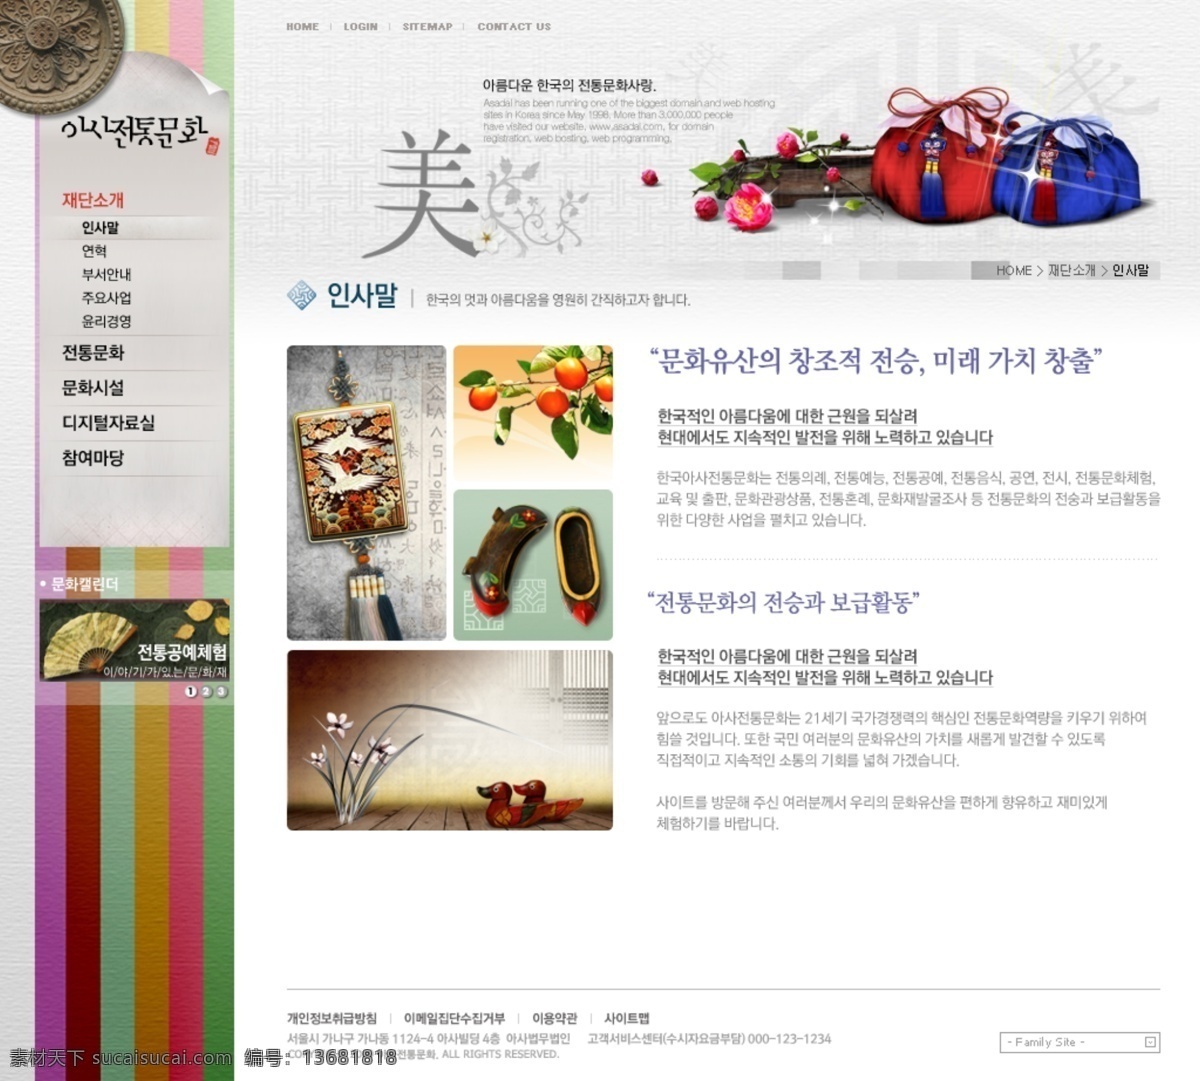 古典 水墨 风格 网页模板 ui设计 版式设计 韩国模板 界面设计 墨痕 墨迹 网页版式 网页布局 网页设计 网页界面 网页素材